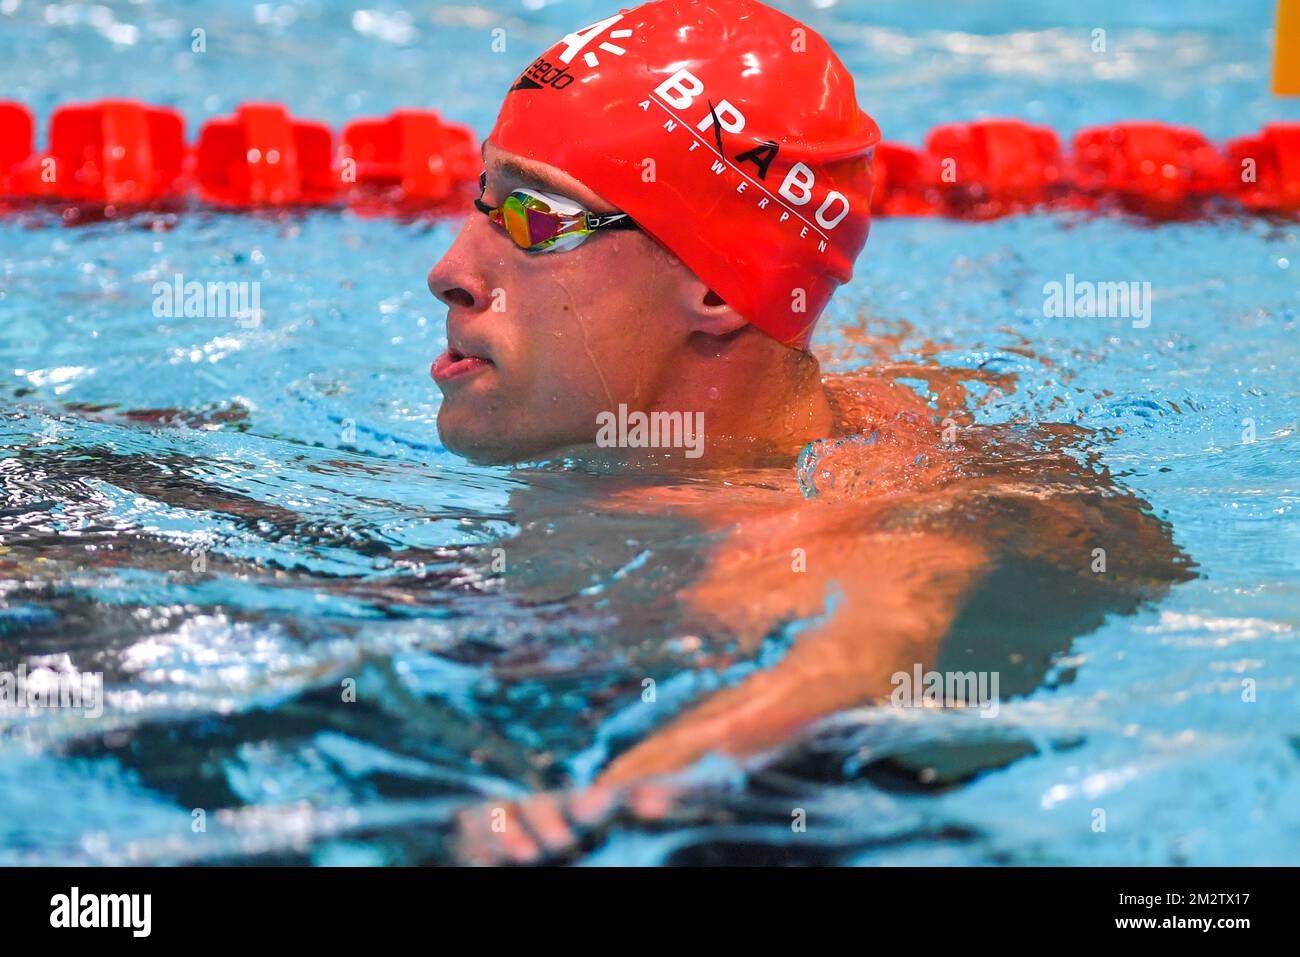 Belge Pieter Timmers photographié après le freestyle masculin 50m le deuxième jour des Championnats de natation Belge, samedi 18 mai 2019 à Anvers. BELGA PHOTO LUC CLAESSEN Banque D'Images